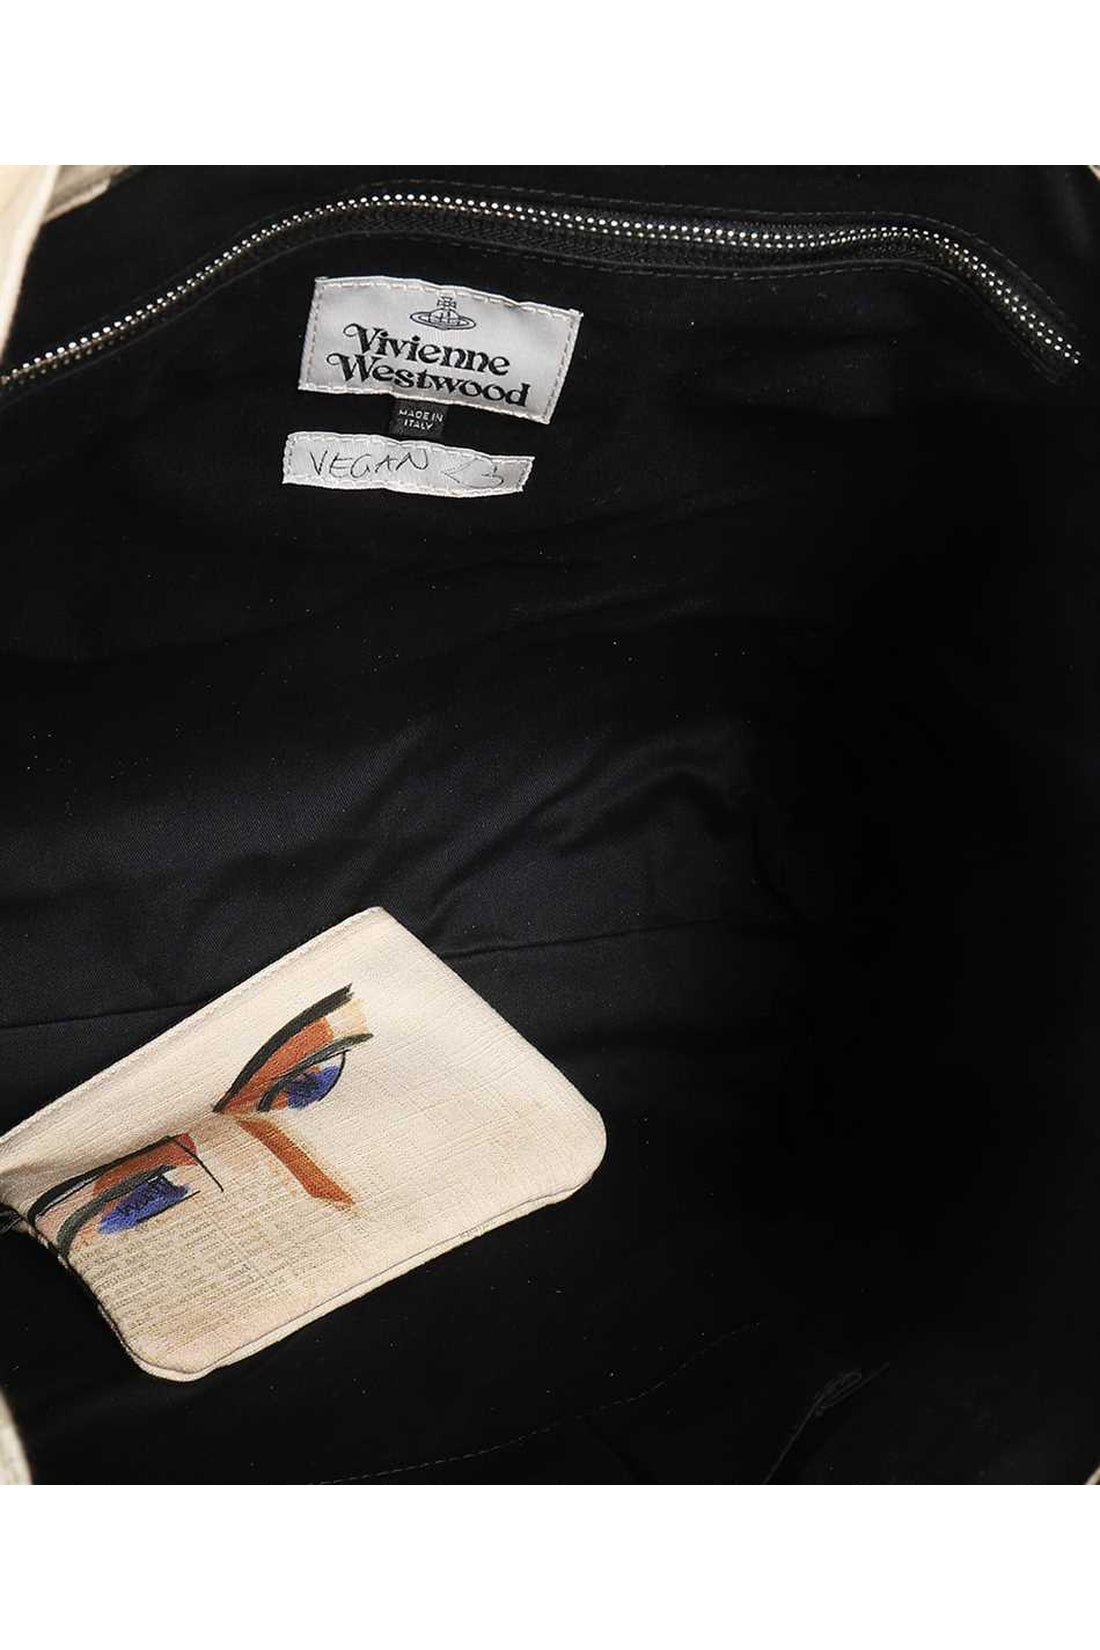 Vivienne Westwood-OUTLET-SALE-Tote bag-ARCHIVIST